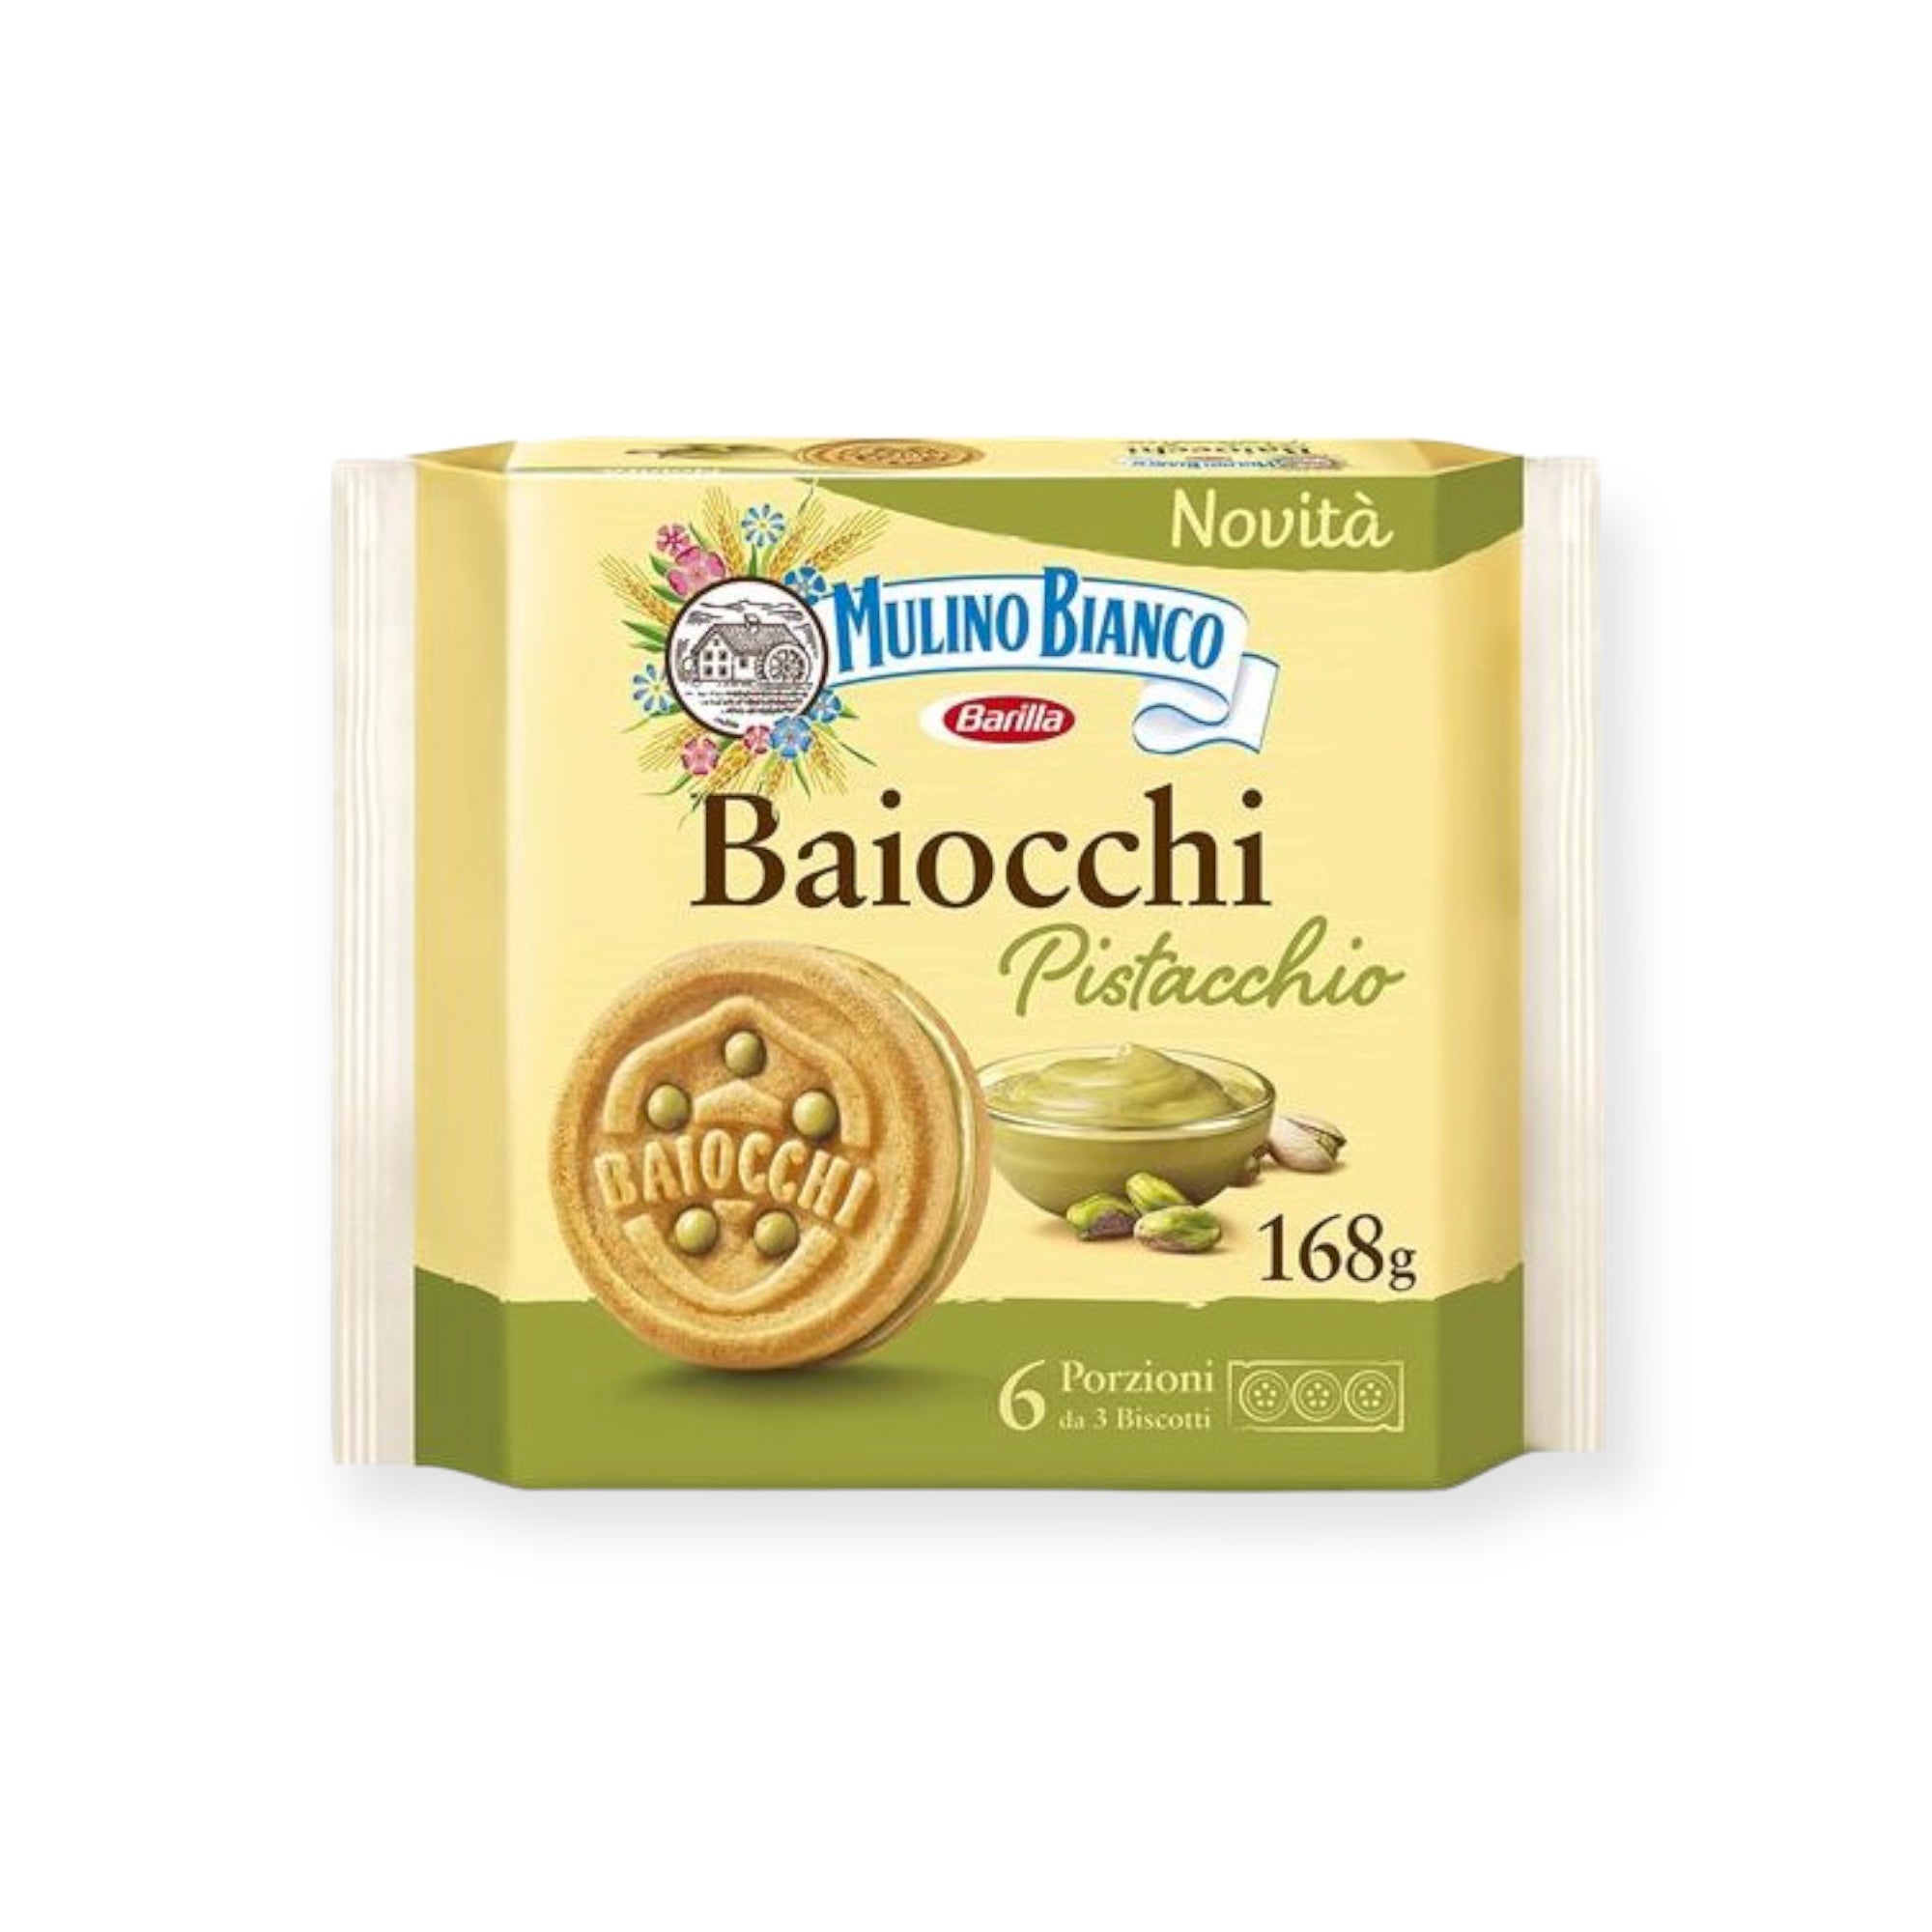 Baiocchi chocolate and hazelnut cookies 7 oz 7 Oz Mulino Bianco